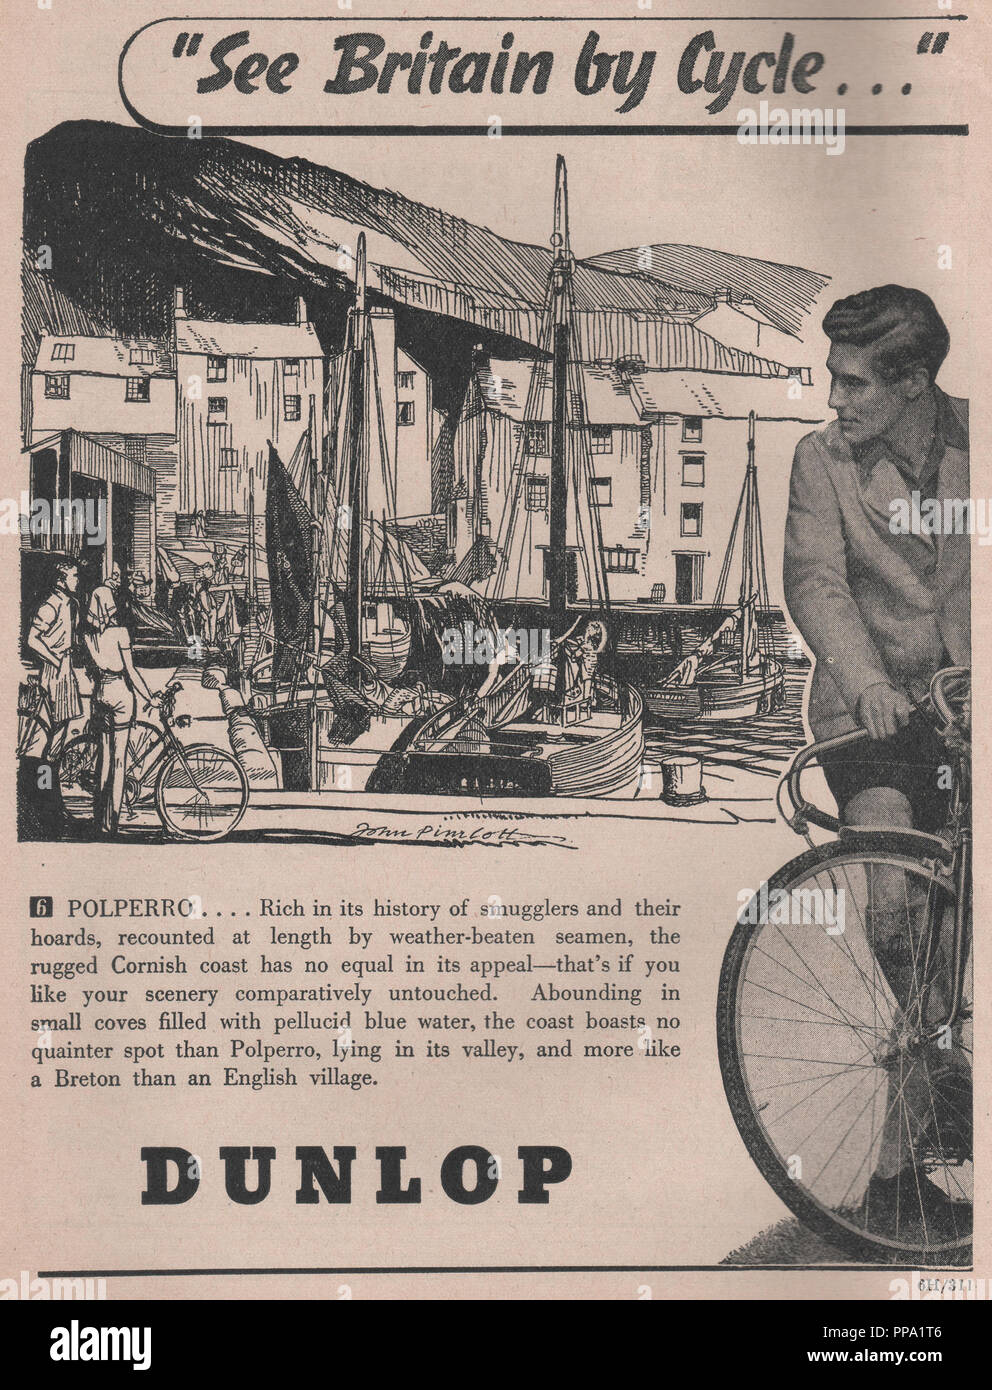 Vintage Dunlops Magazin Werbung ee Großbritannien von Cycle" bis November 1946 datiert. Es zeigt eine Abbildung von Polperro in Cornwall mit einer kurzen romantisierten Beschreibung der Stadt. Stockfoto